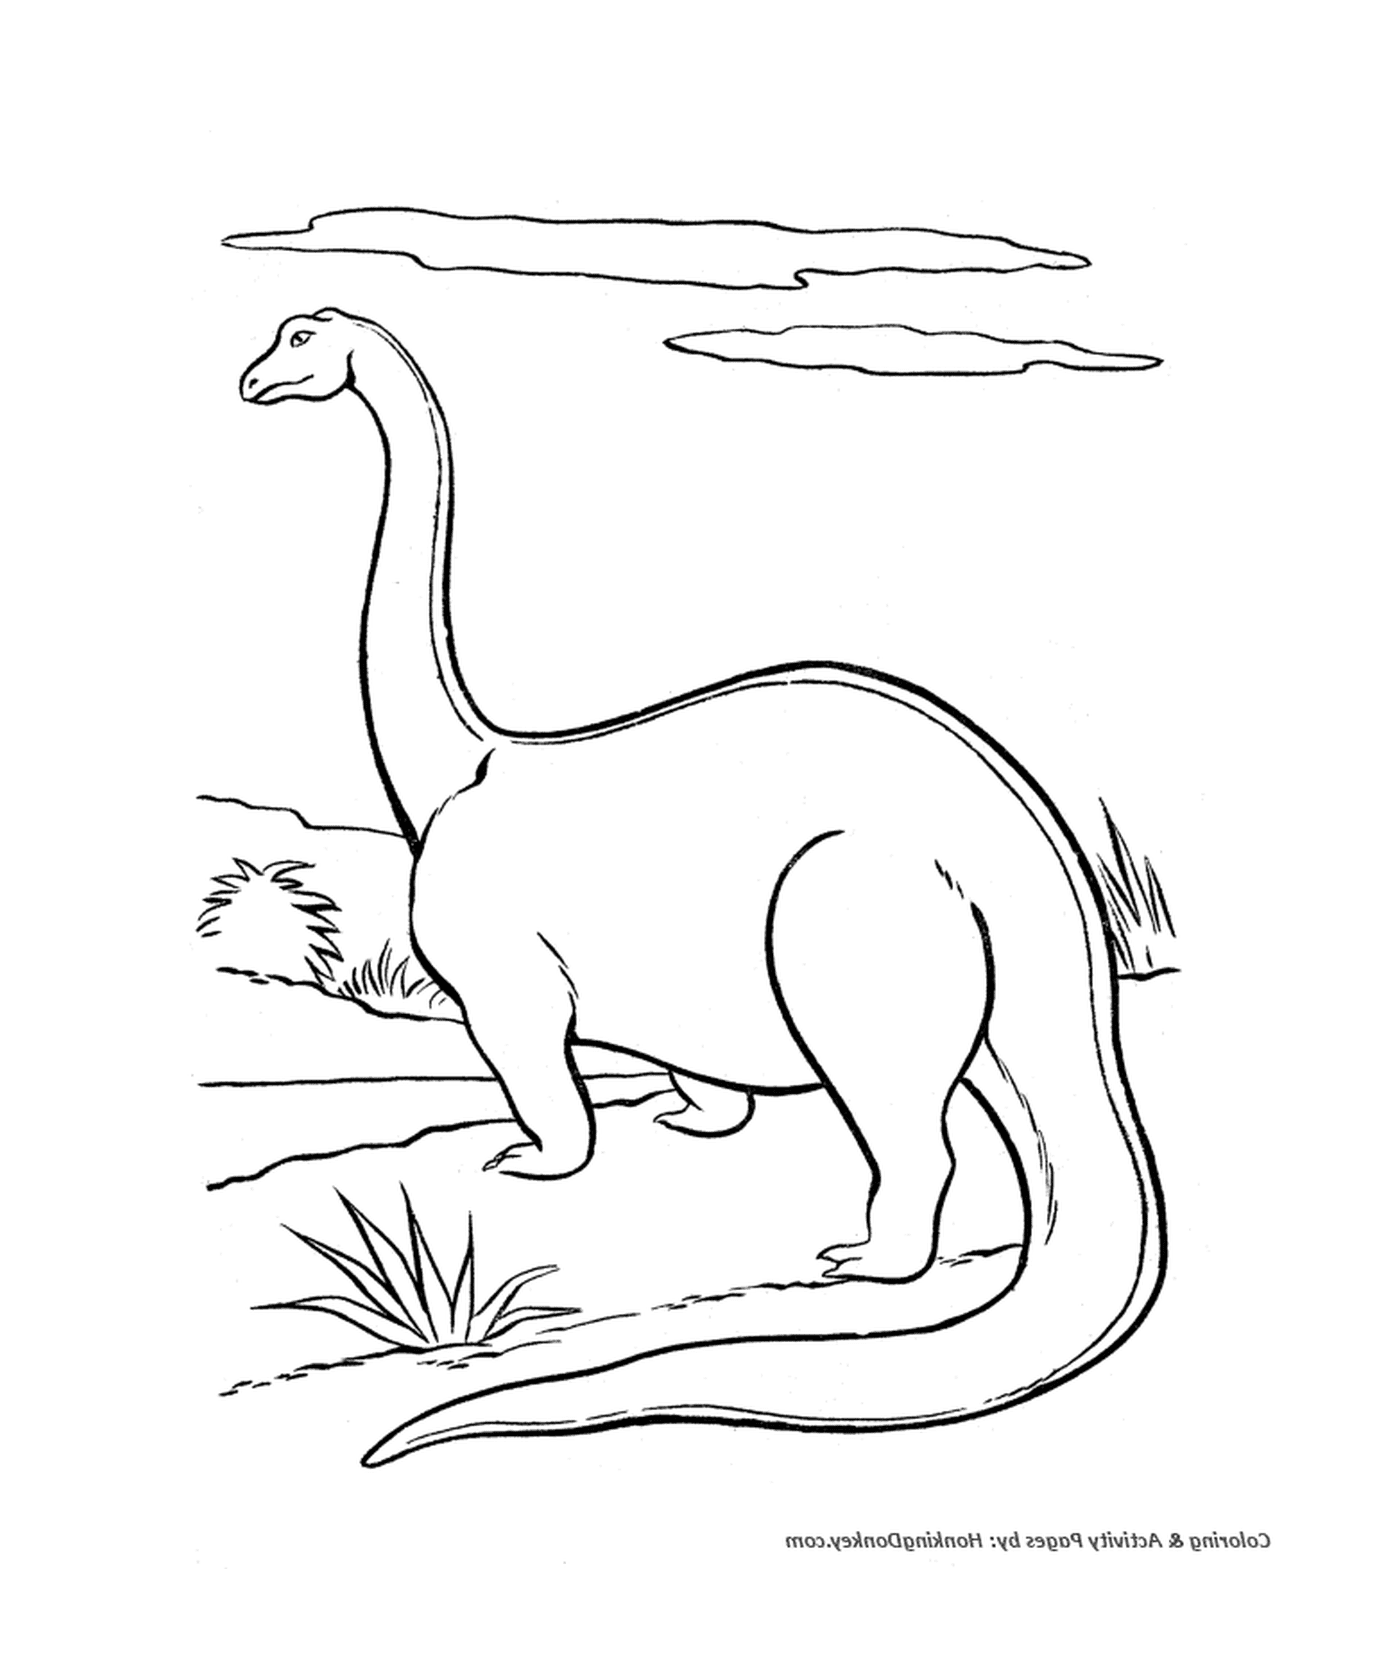  Dinossauro com pescoço longo e pernas longas 